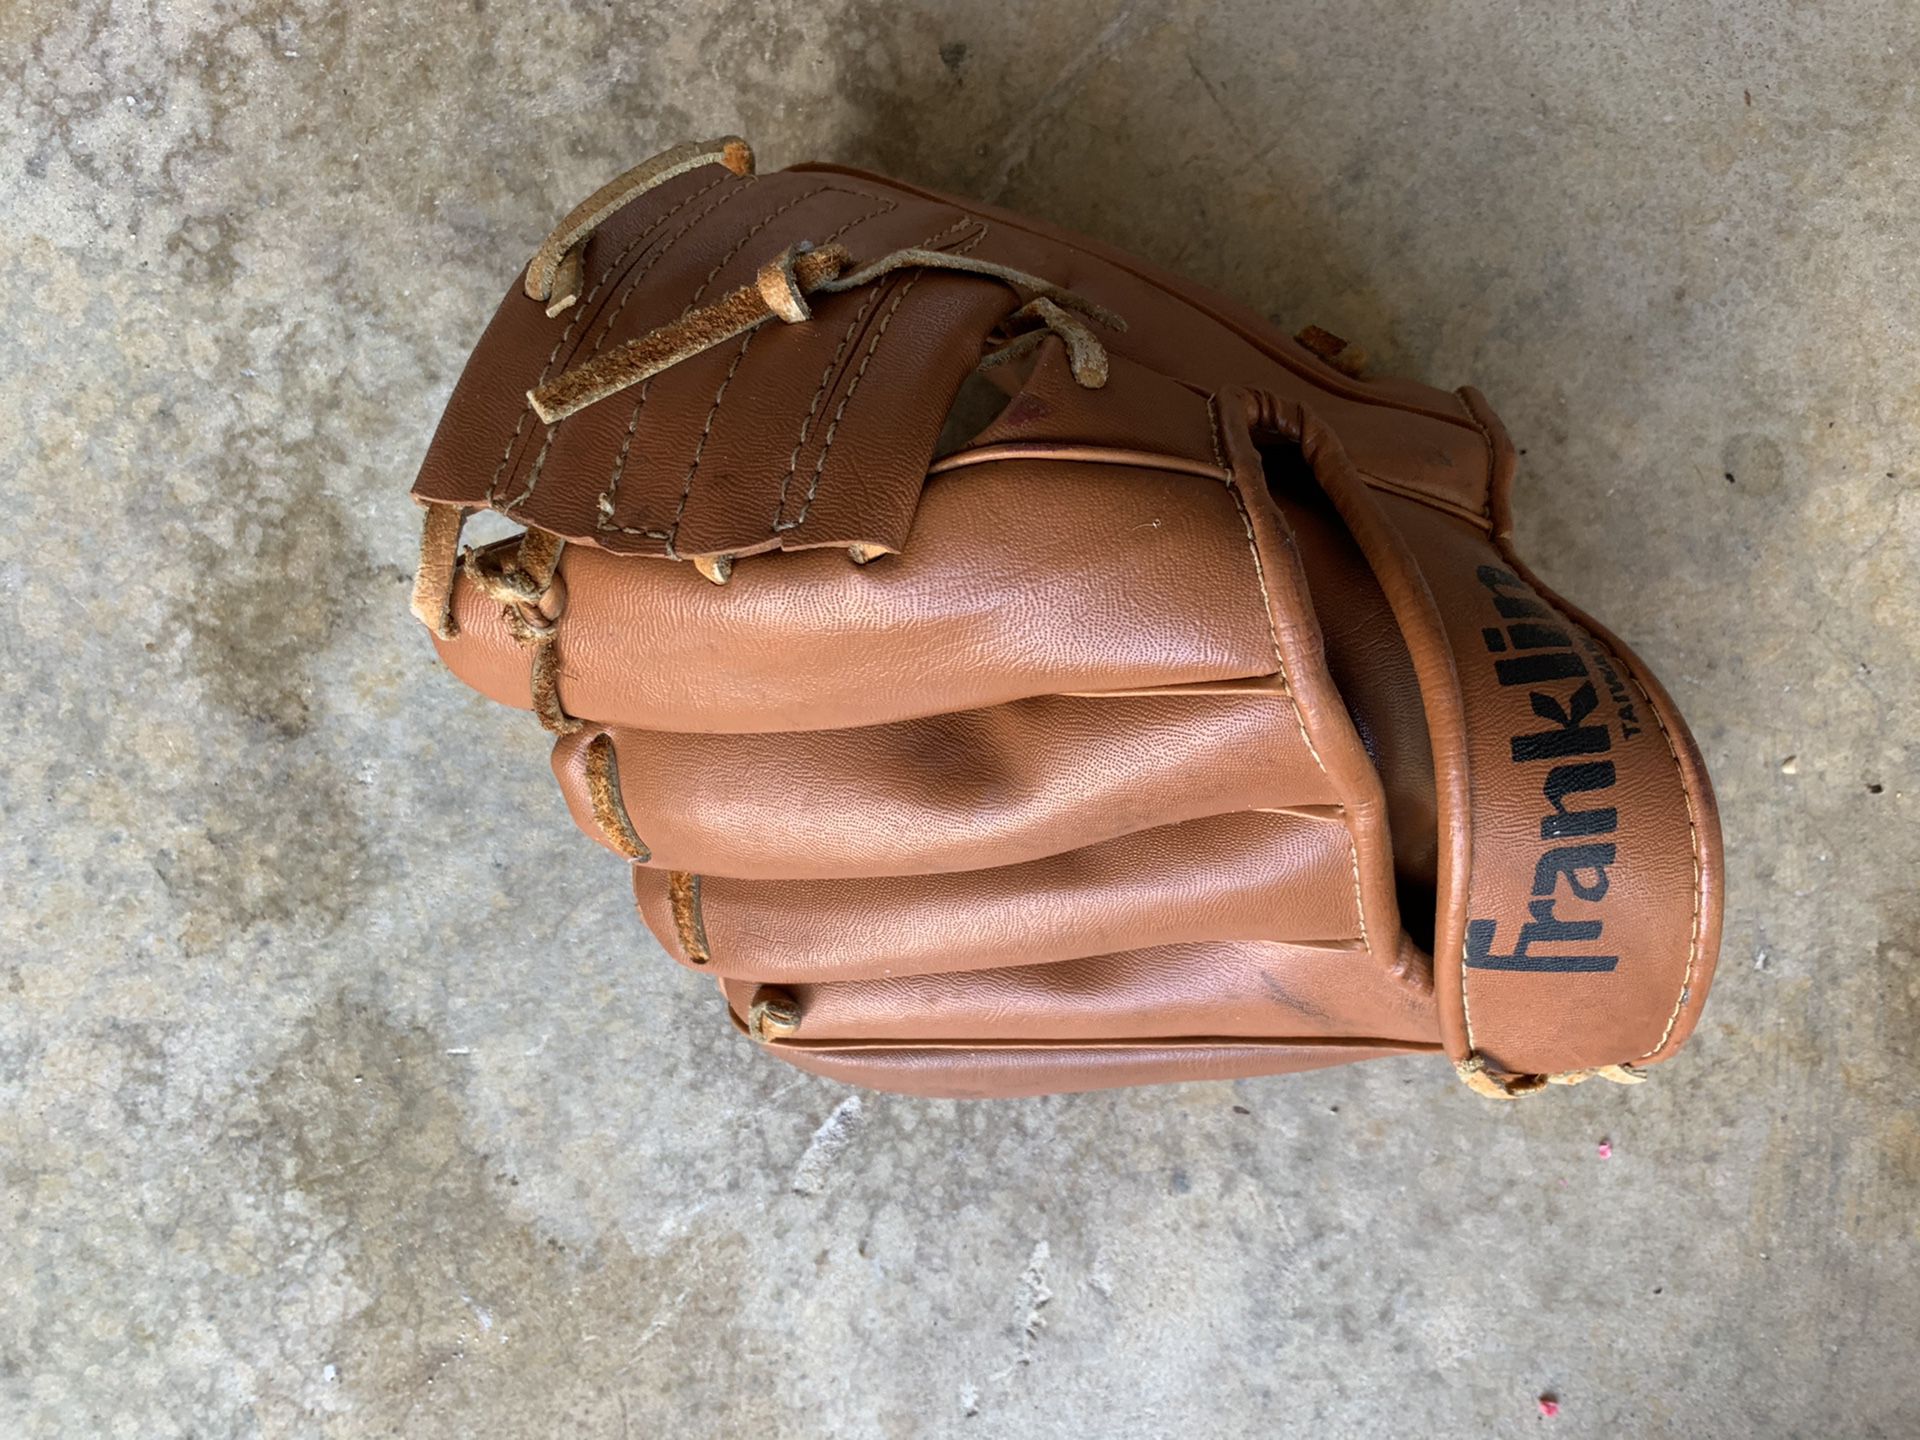 Franklin Baseball glove